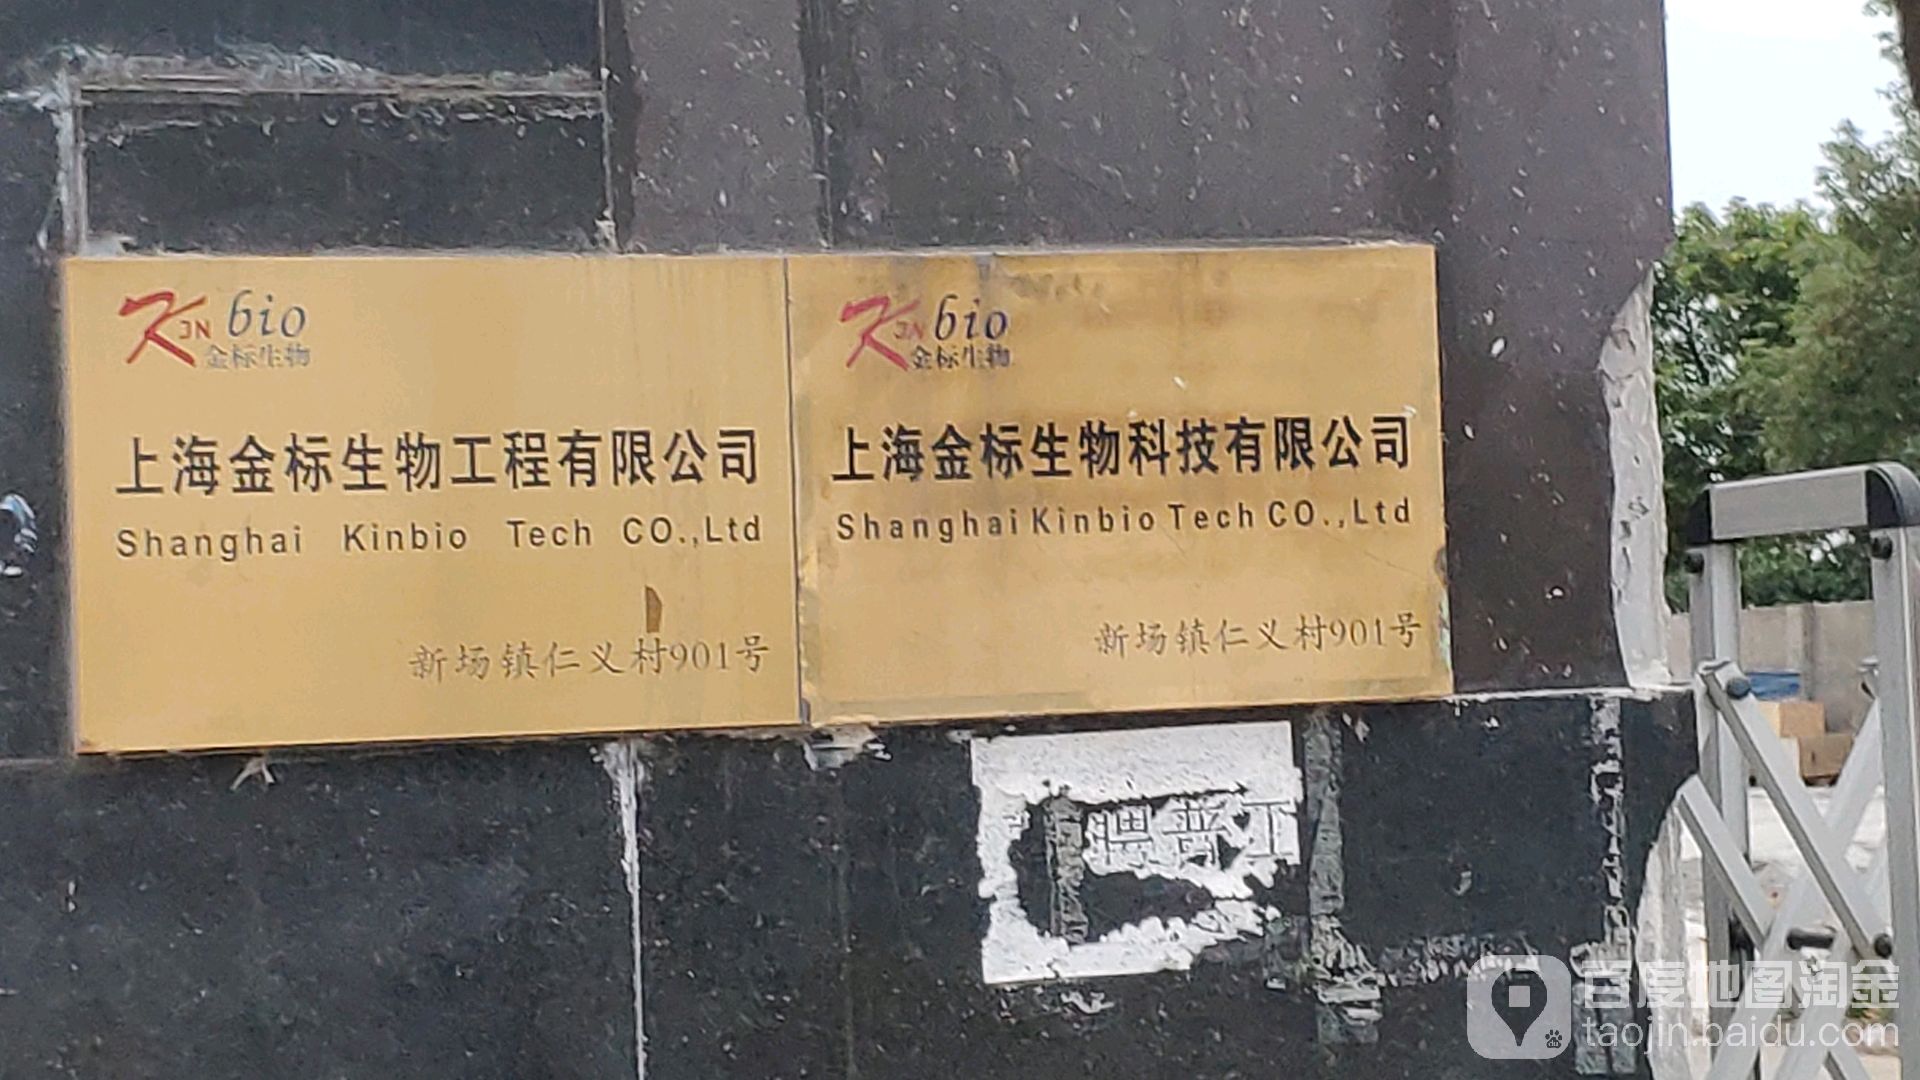 上海市浦东新区申江南路与机口路交叉路口西侧